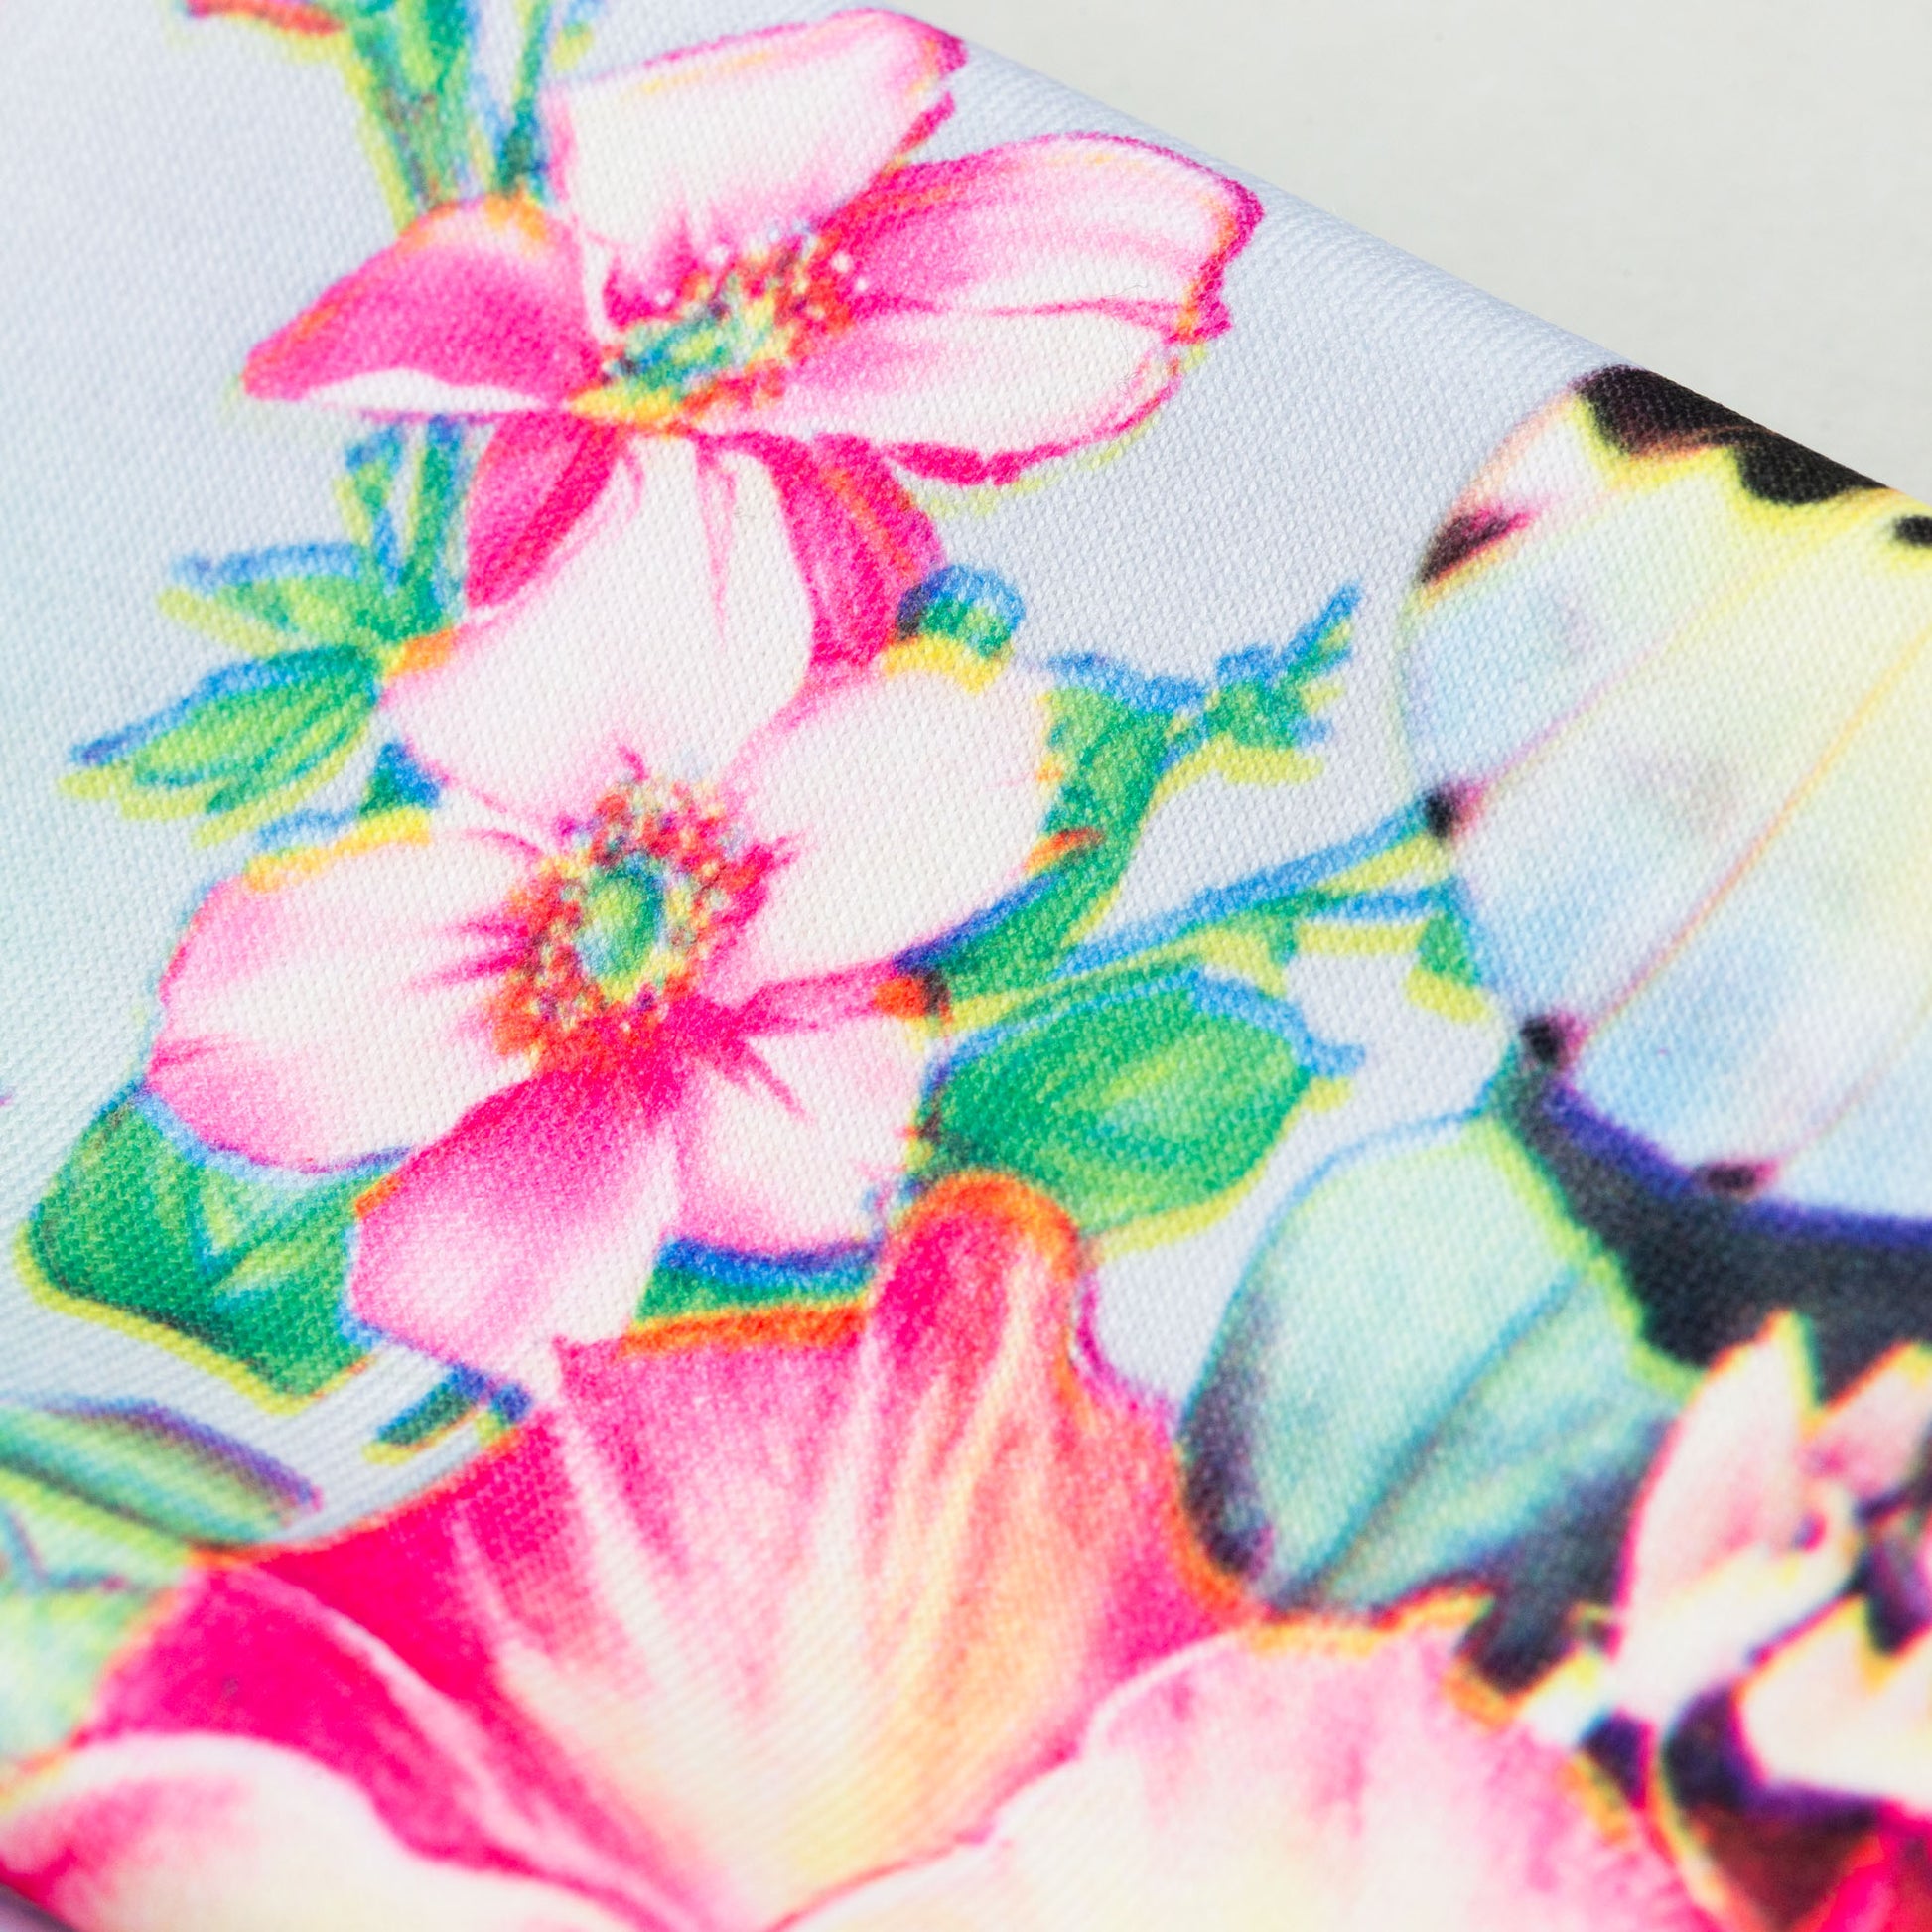 Bentiță de păr simplă cu, imprimeu flower jungle - Verde, Roz